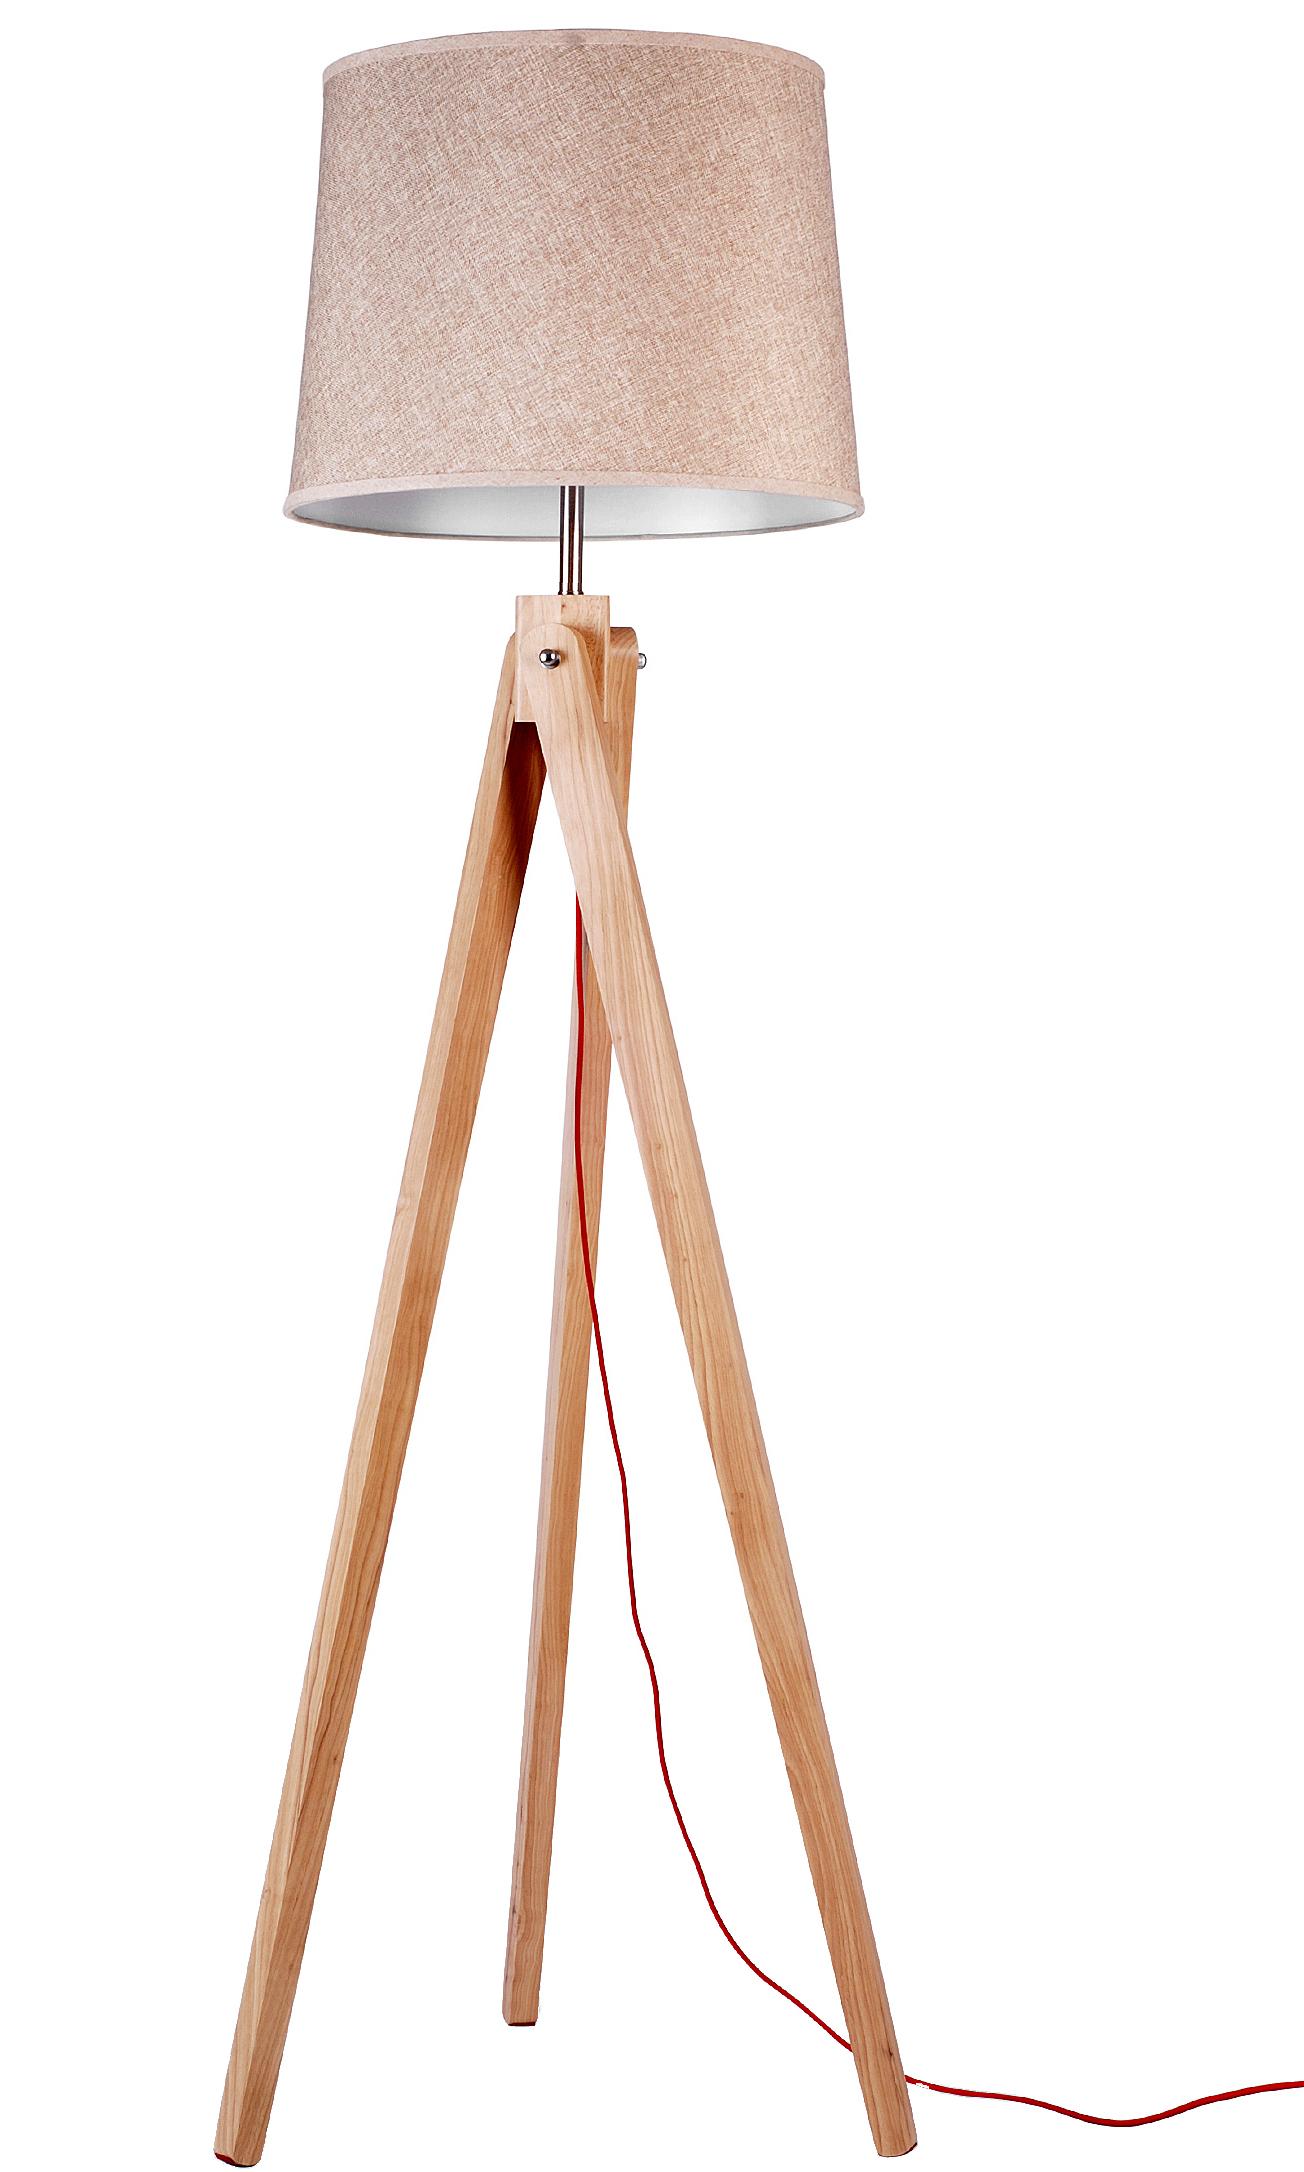 Modern natural wood floor lamp reading lamp